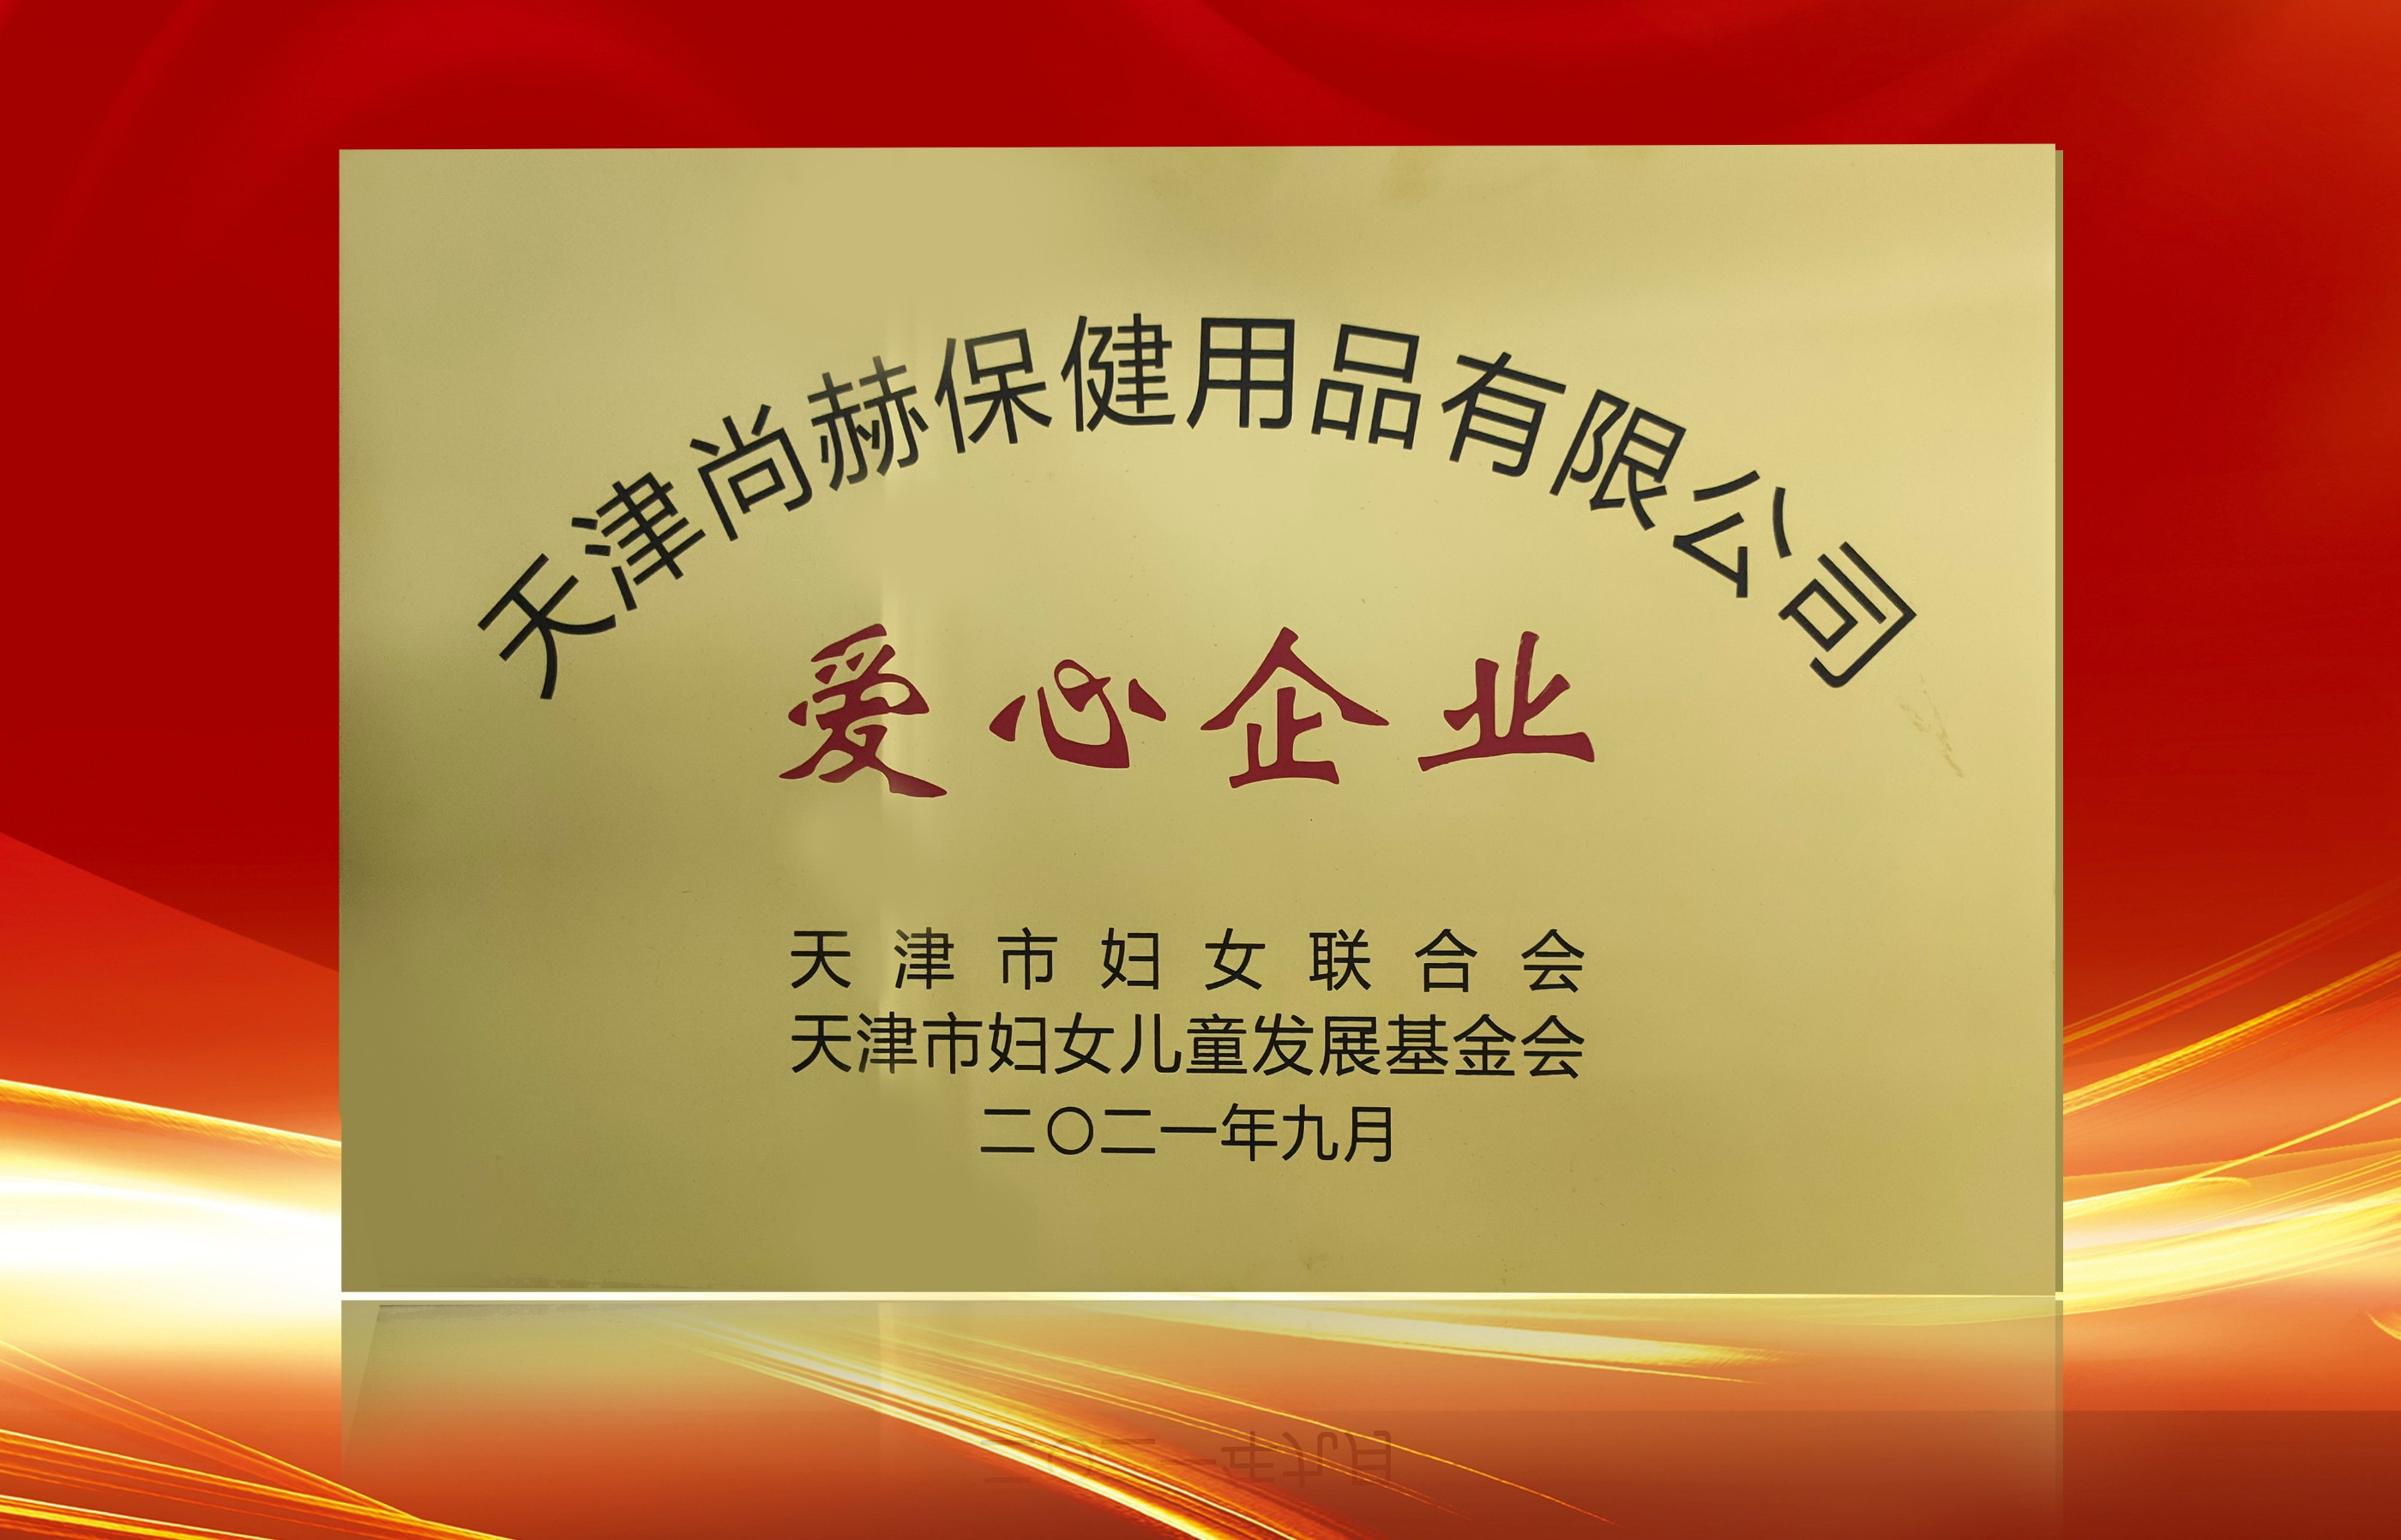 2021年9月-皇家体育(中国)有限责任公司公司荣获-天津市妇女联合会-“爱心企业”称号